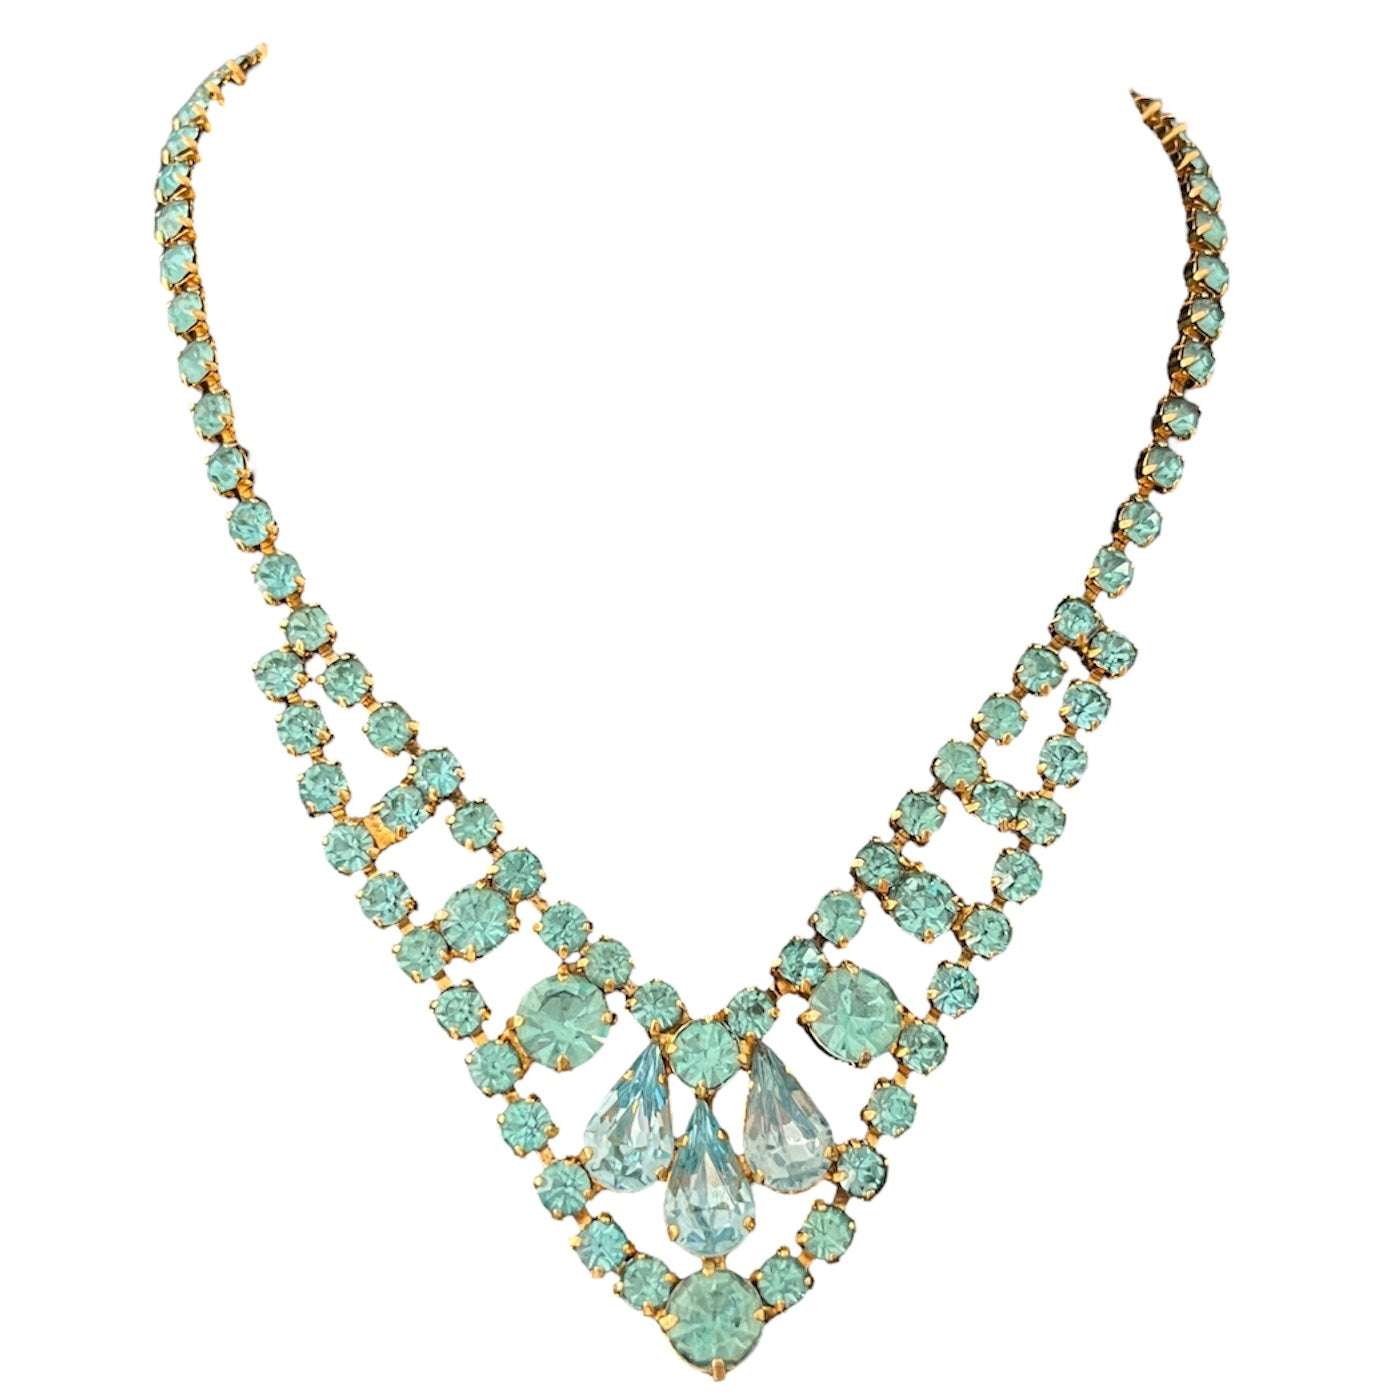 1950s Aqua Blue Diamanté Sparkly Gold Plated Necklace